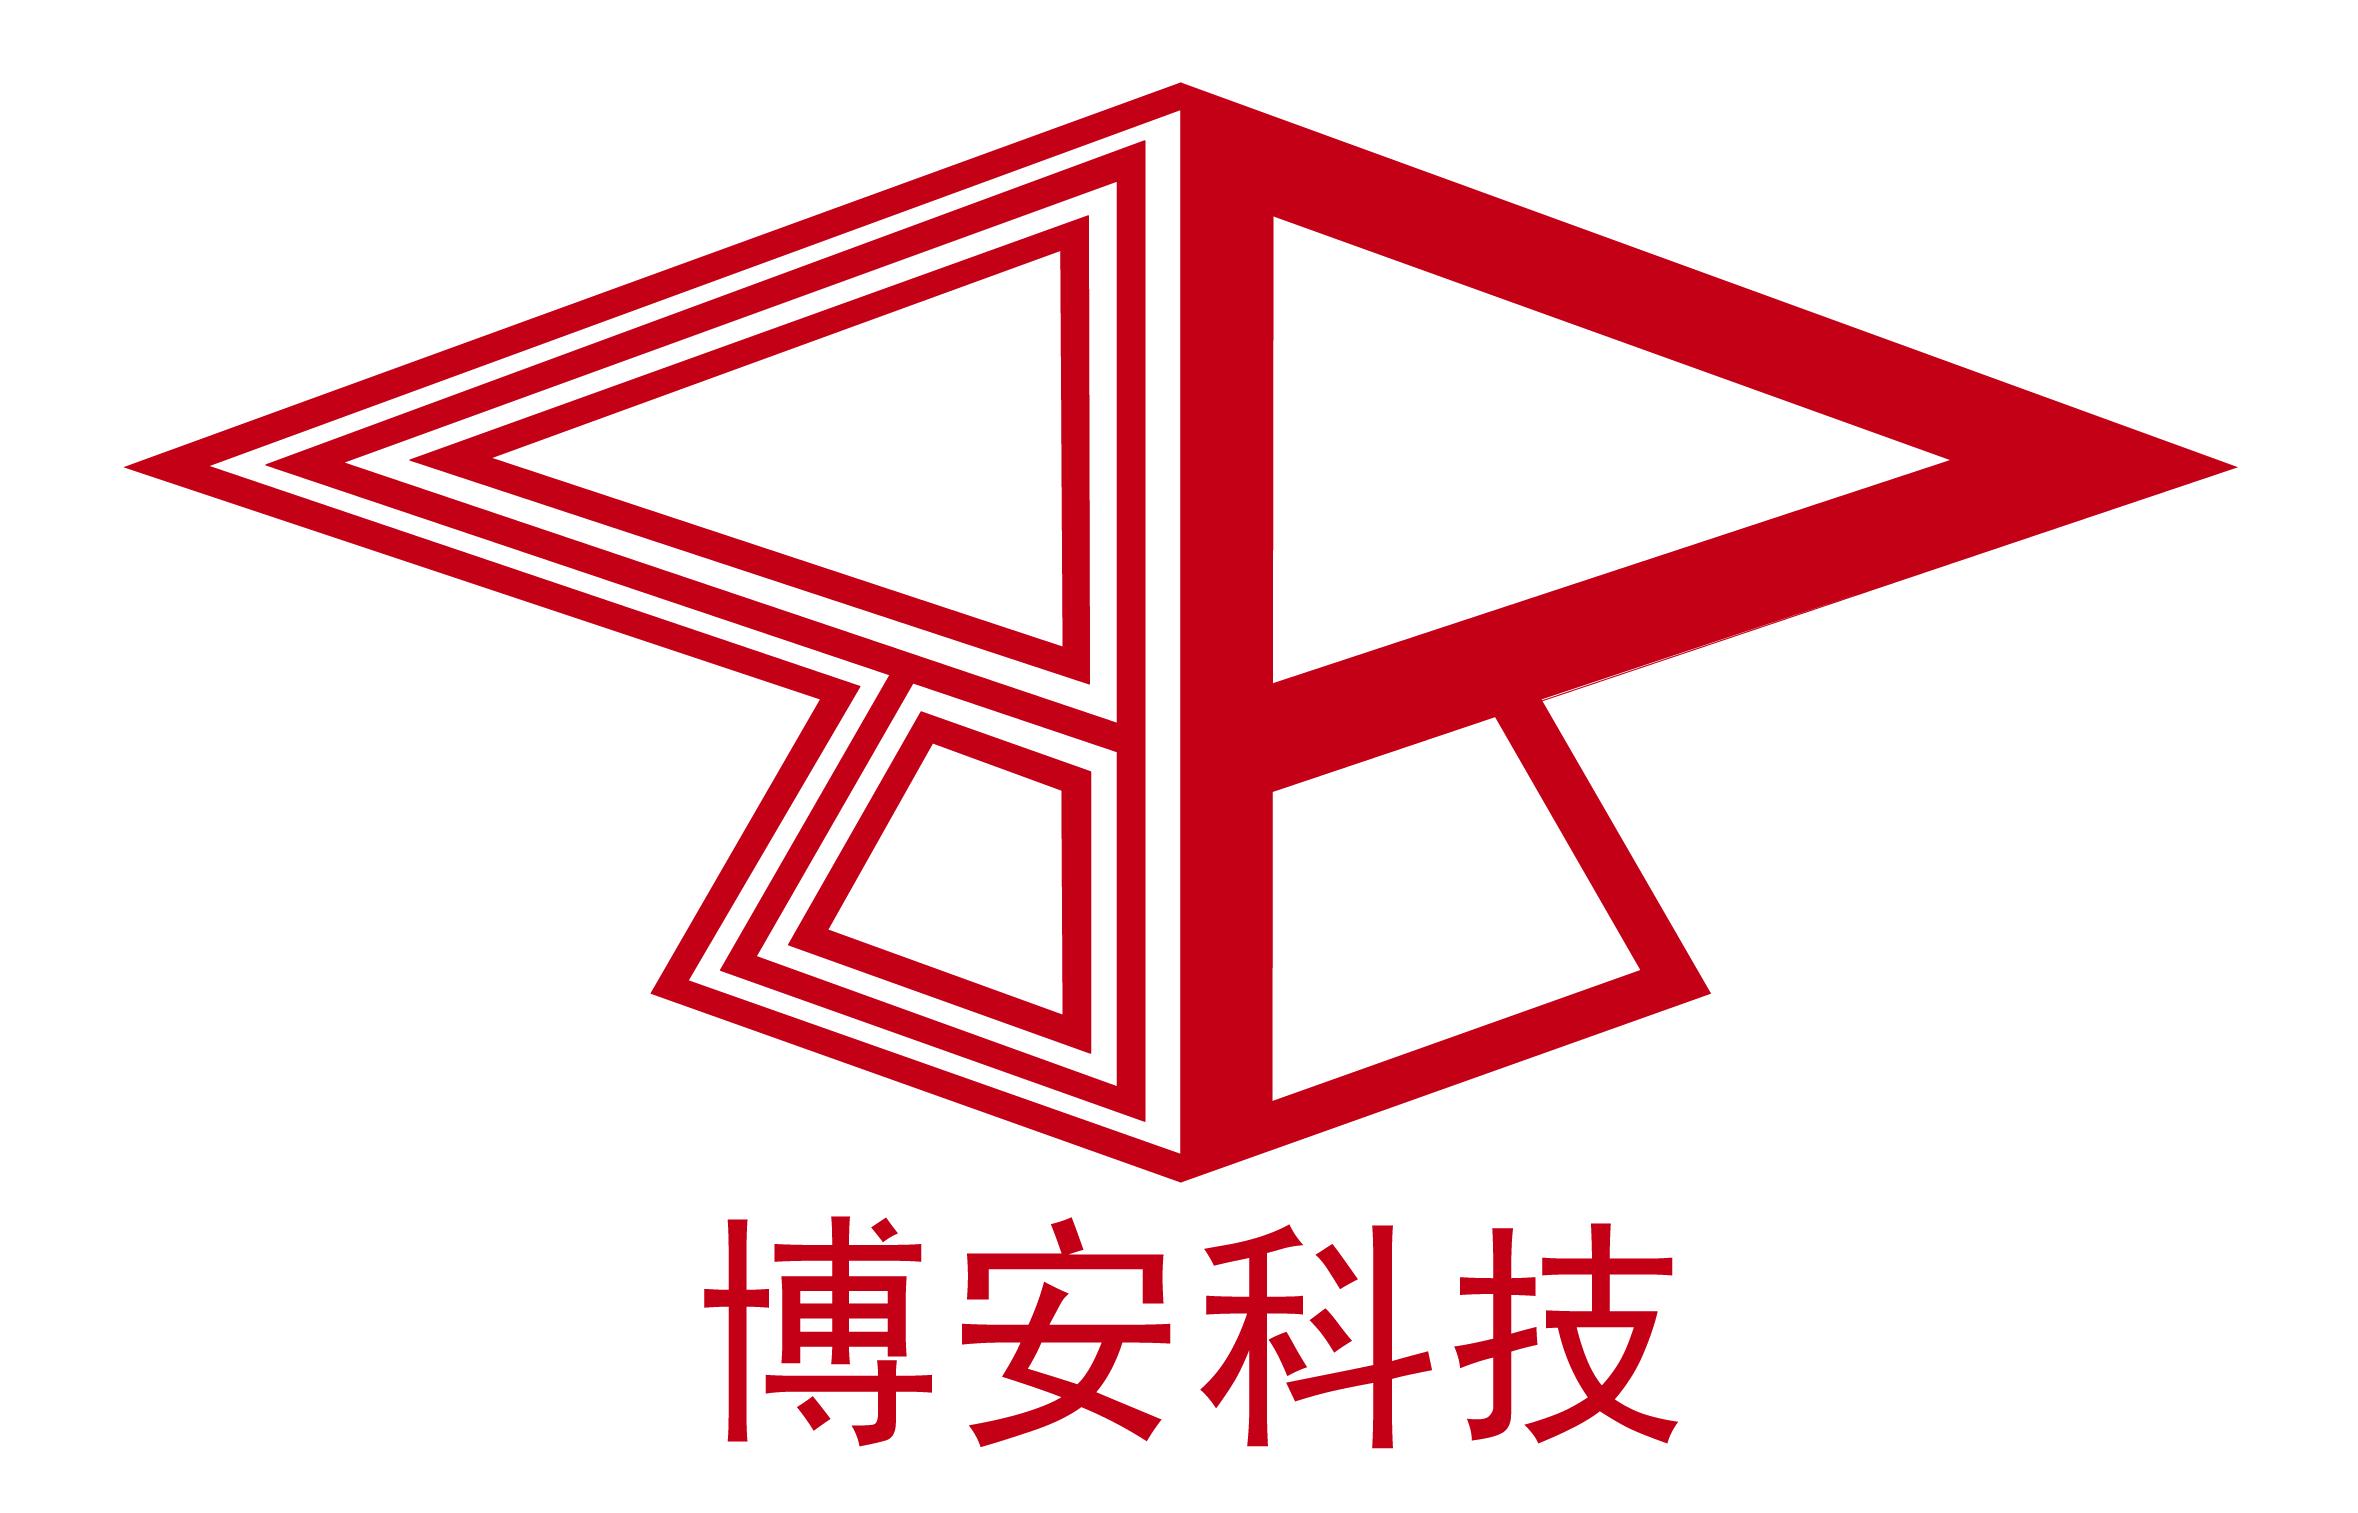 荣誉+1 博安科技再获江苏省民营科技企业称号